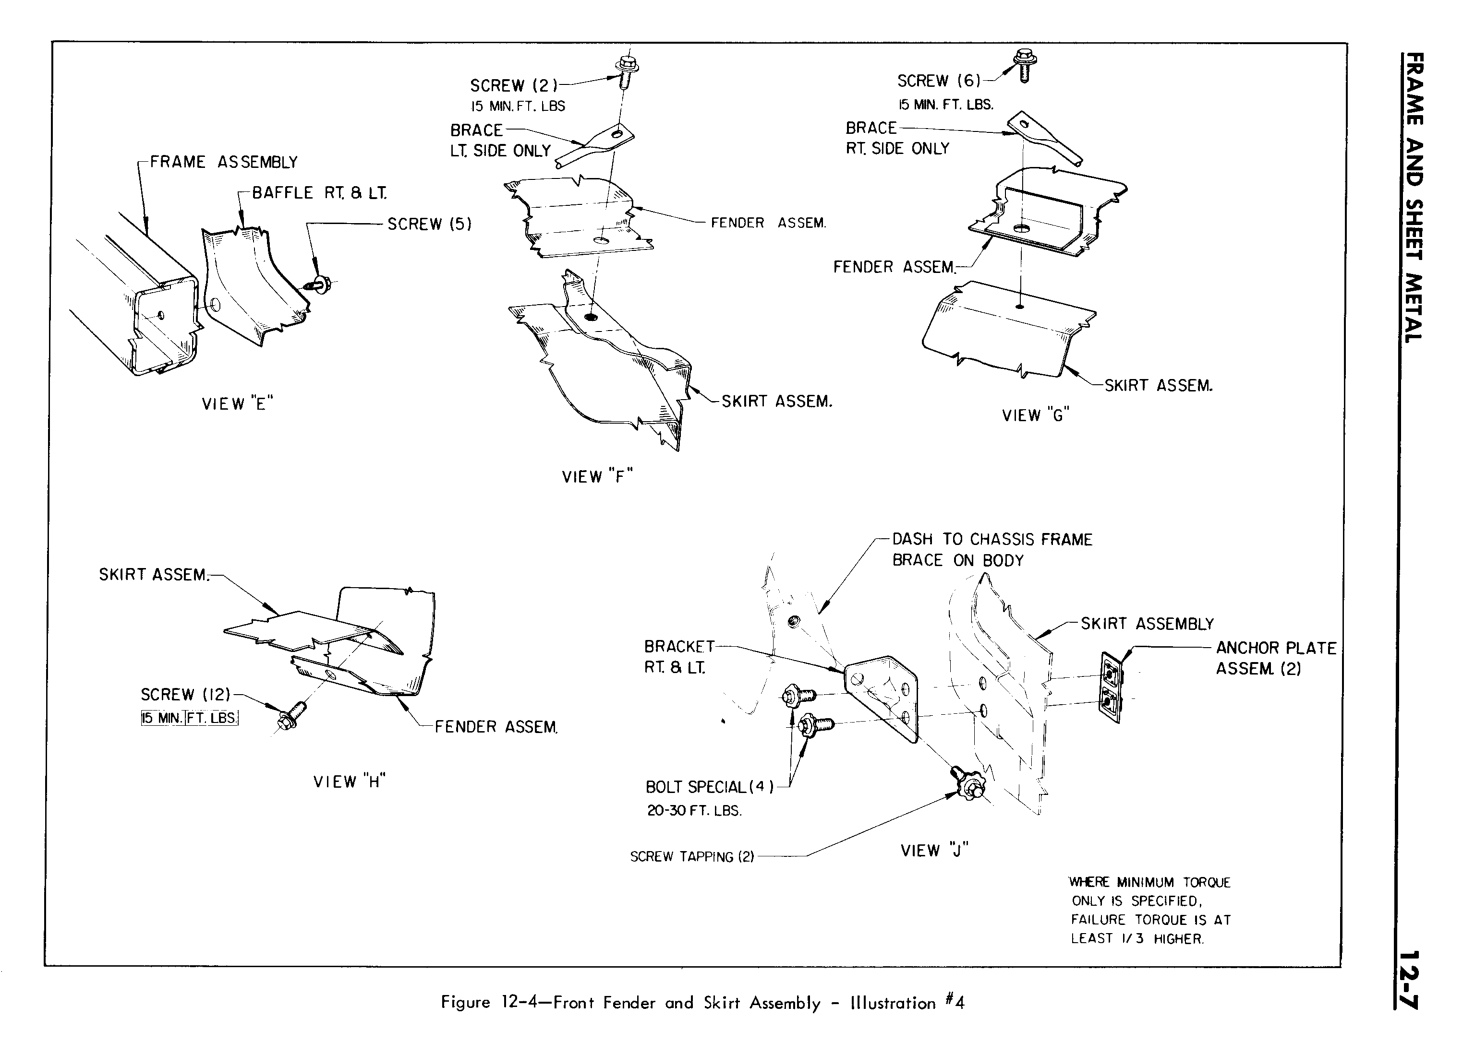 n_12 1961 Buick Shop Manual - Frame & Sheet Metal-007-007.jpg